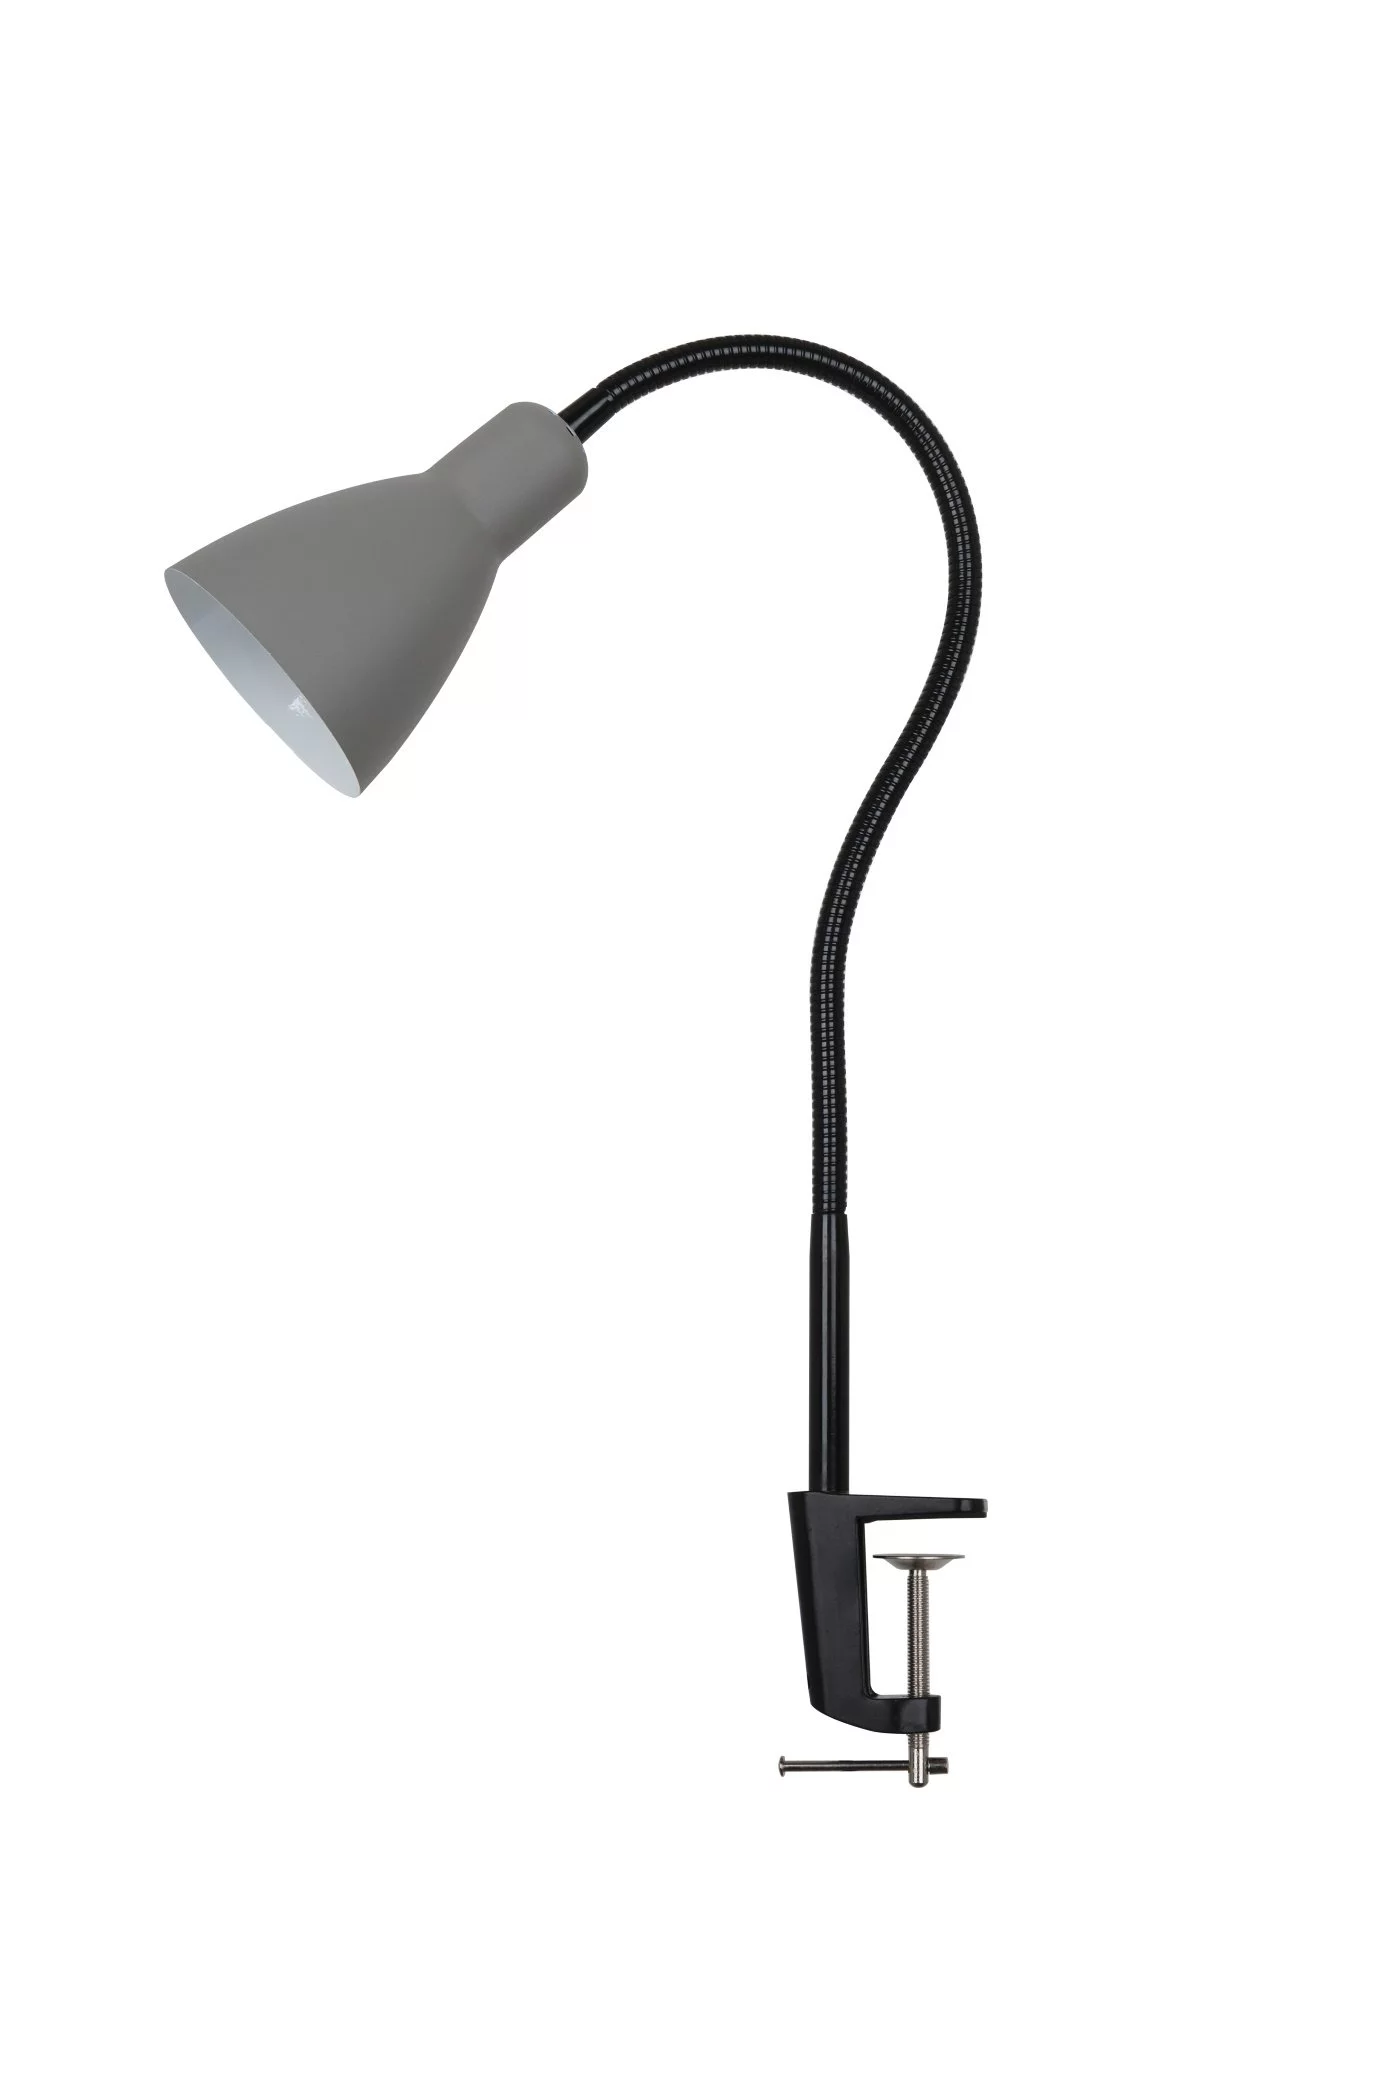   
                        Настільна лампа LAGUNA LIGHTING (Китай) 25626    
                         у стилі лофт.  
                        Тип джерела світла: cвітлодіодні led, енергозберігаючі, розжарювання.                                                 Кольори плафонів і підвісок: сірий.                         Матеріал: метал.                          фото 1